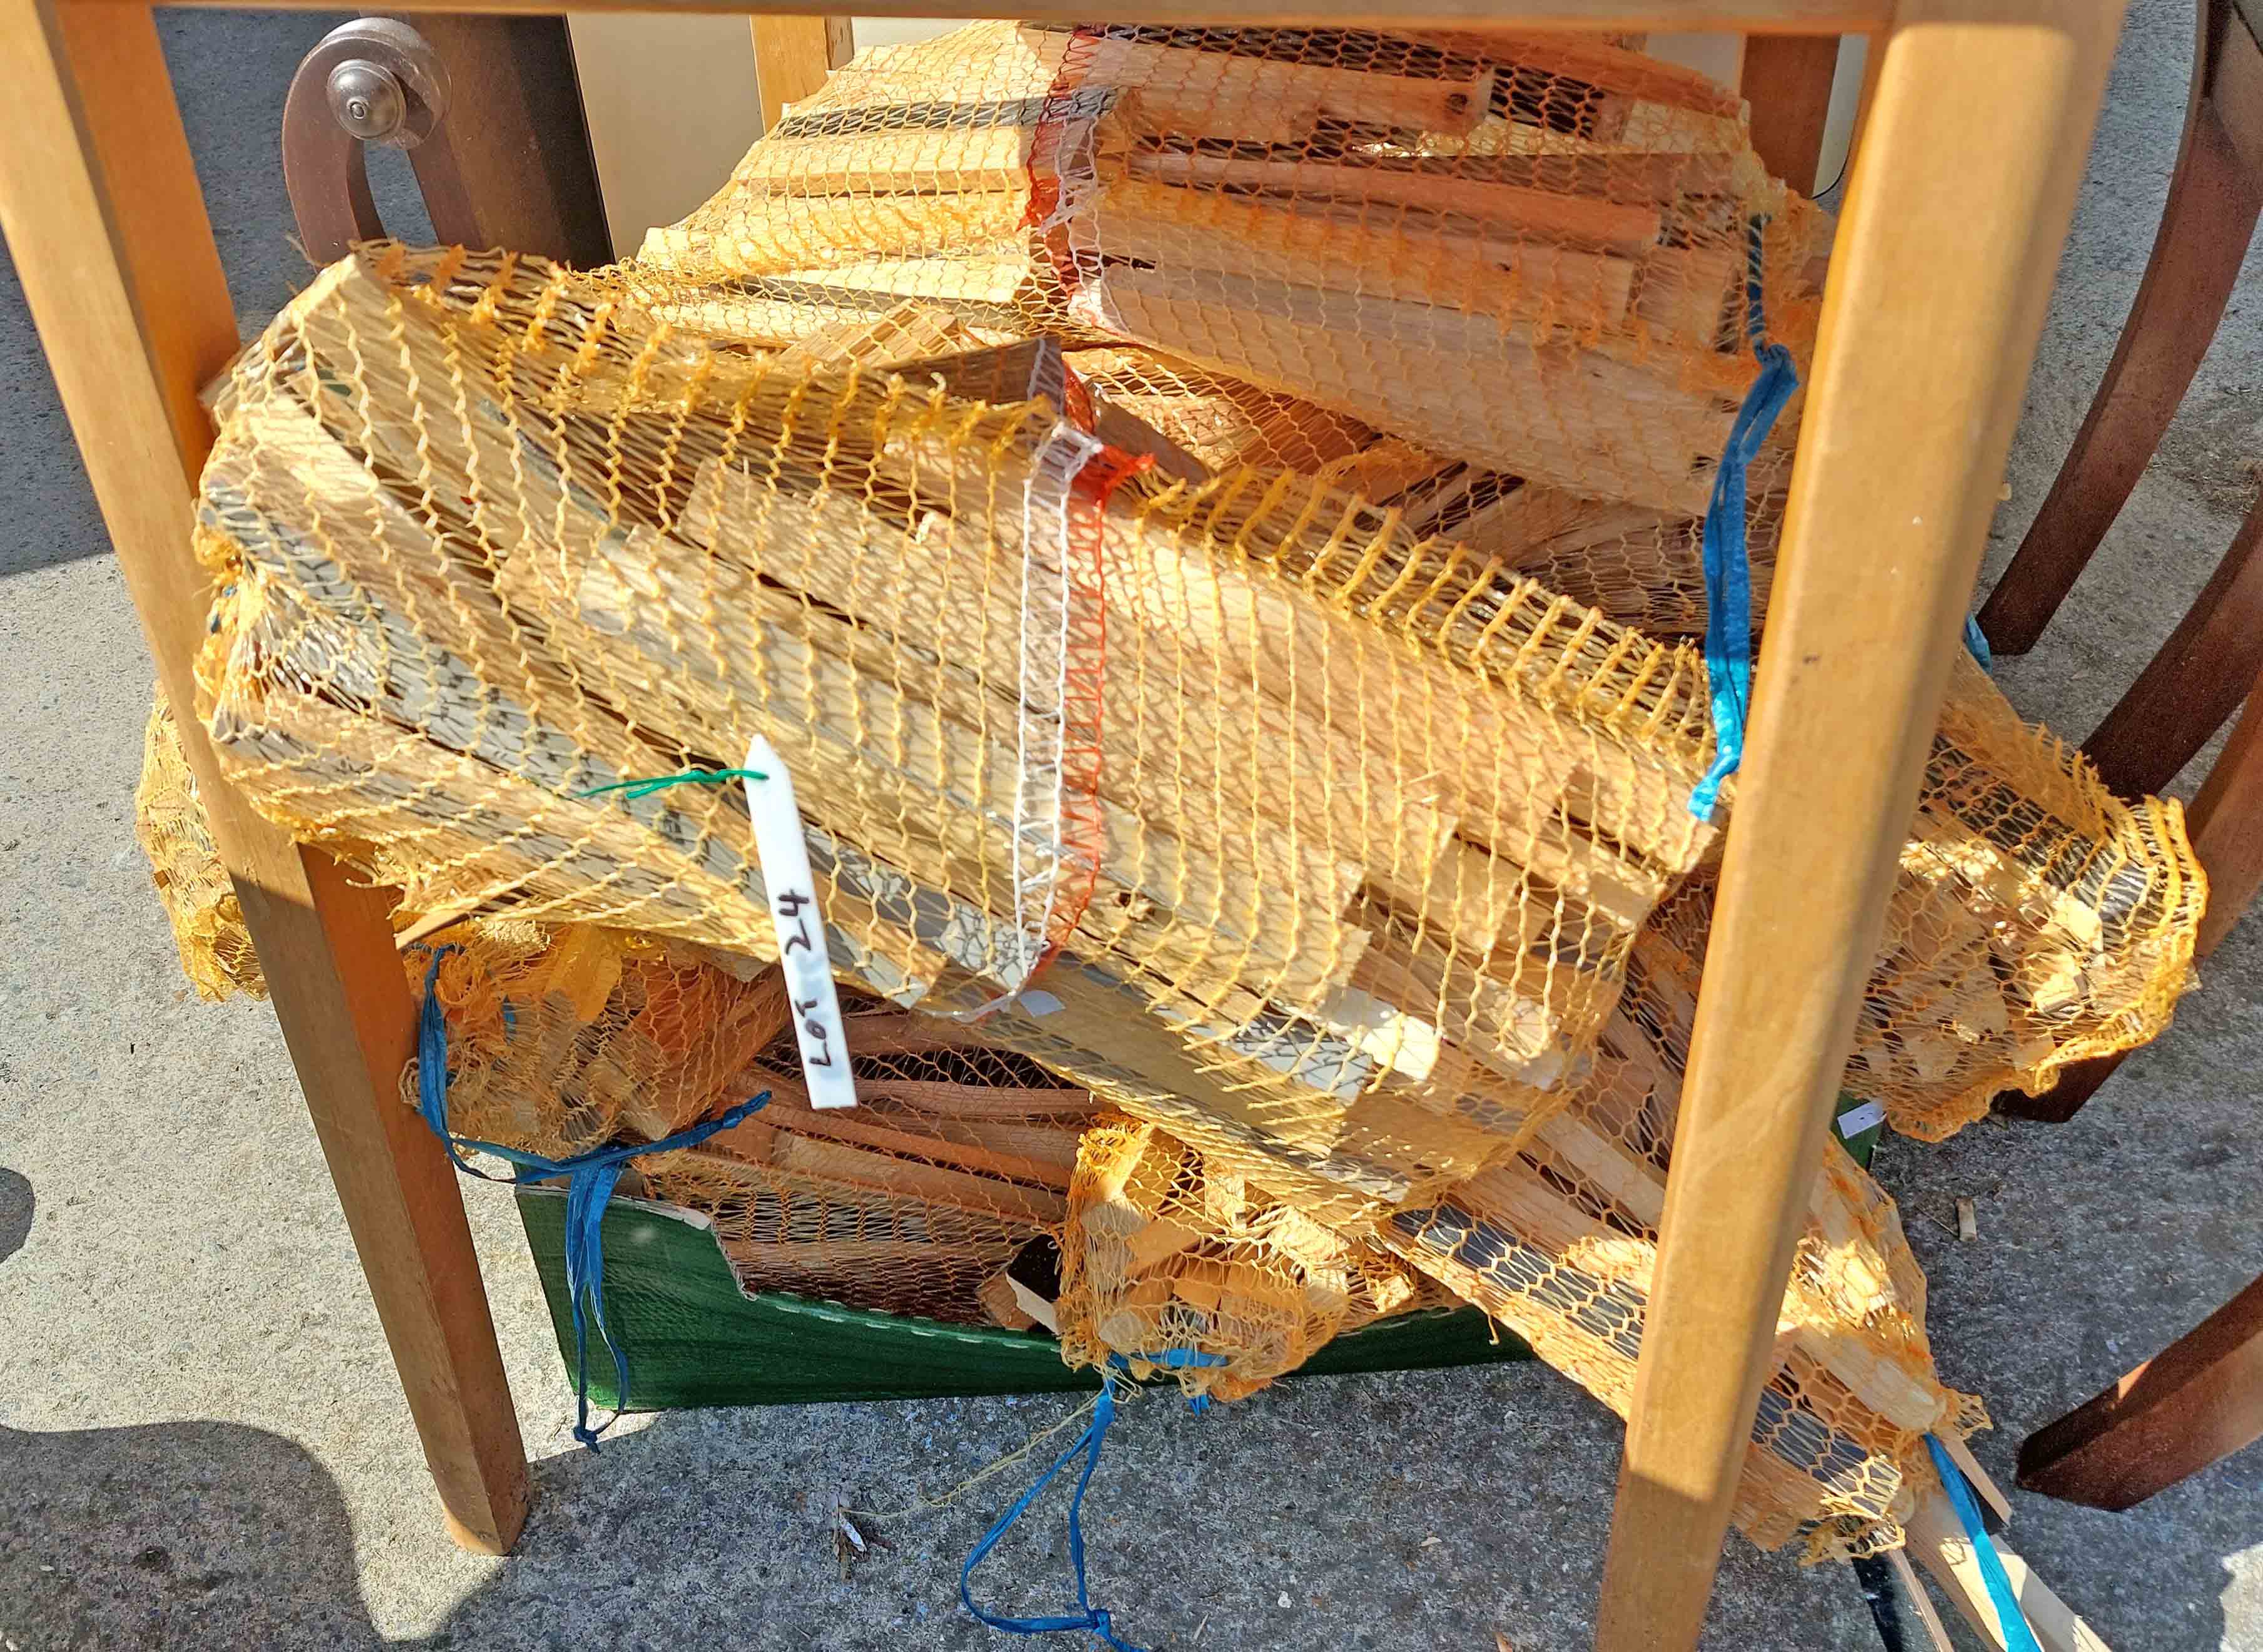 Ten nets of kindling wood